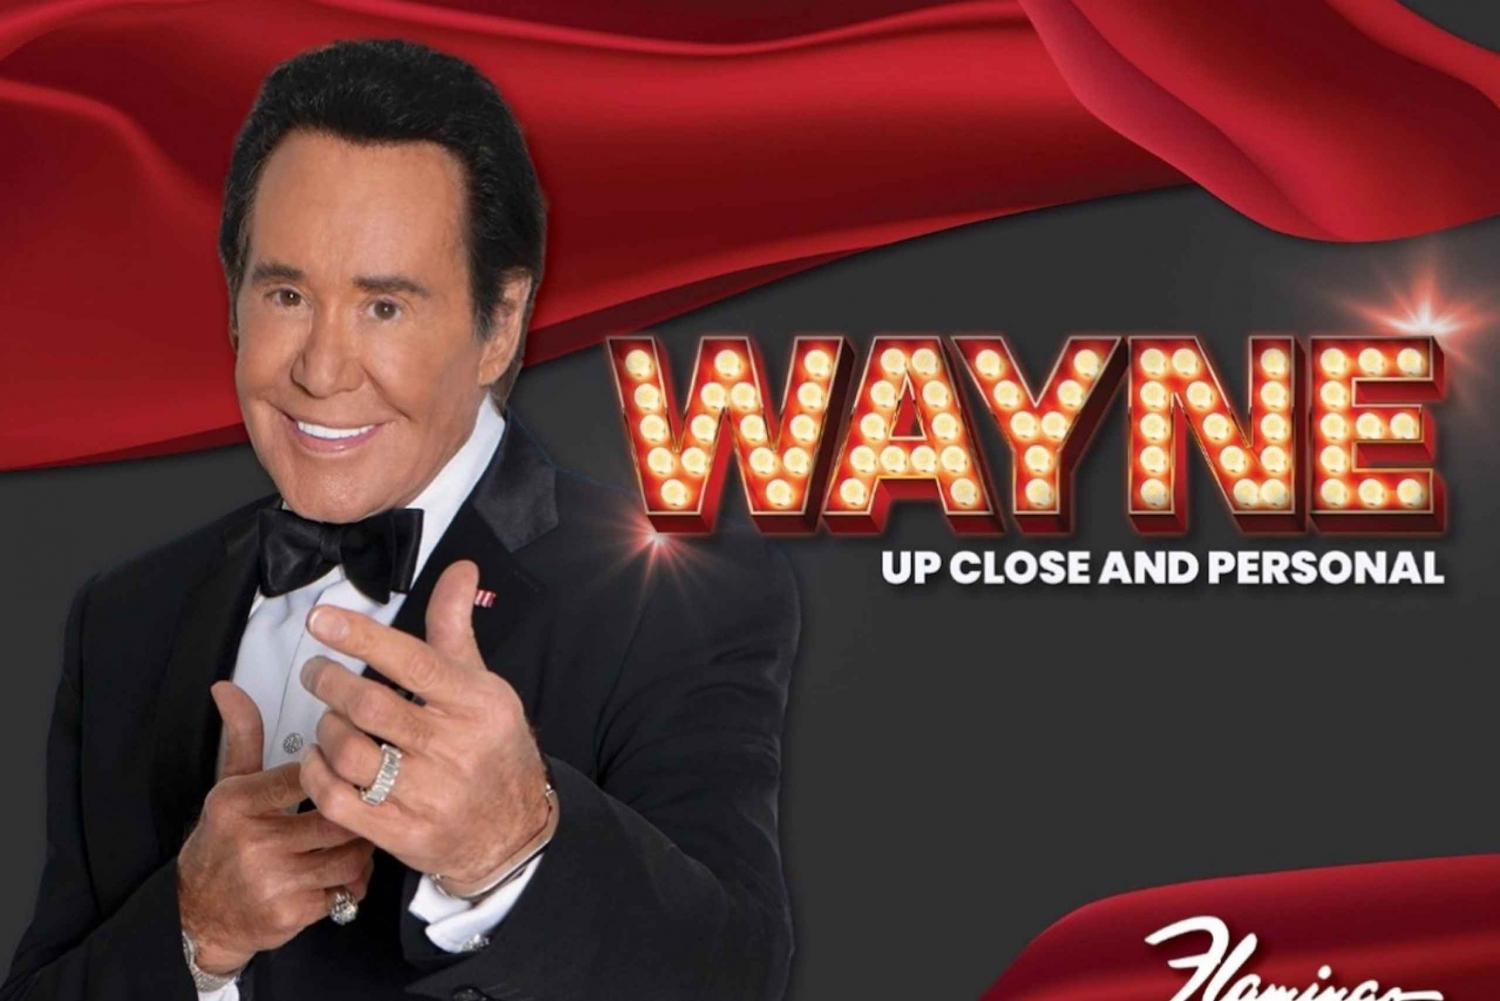 Las Vegas: Wayne Newton - Van dichtbij en persoonlijk